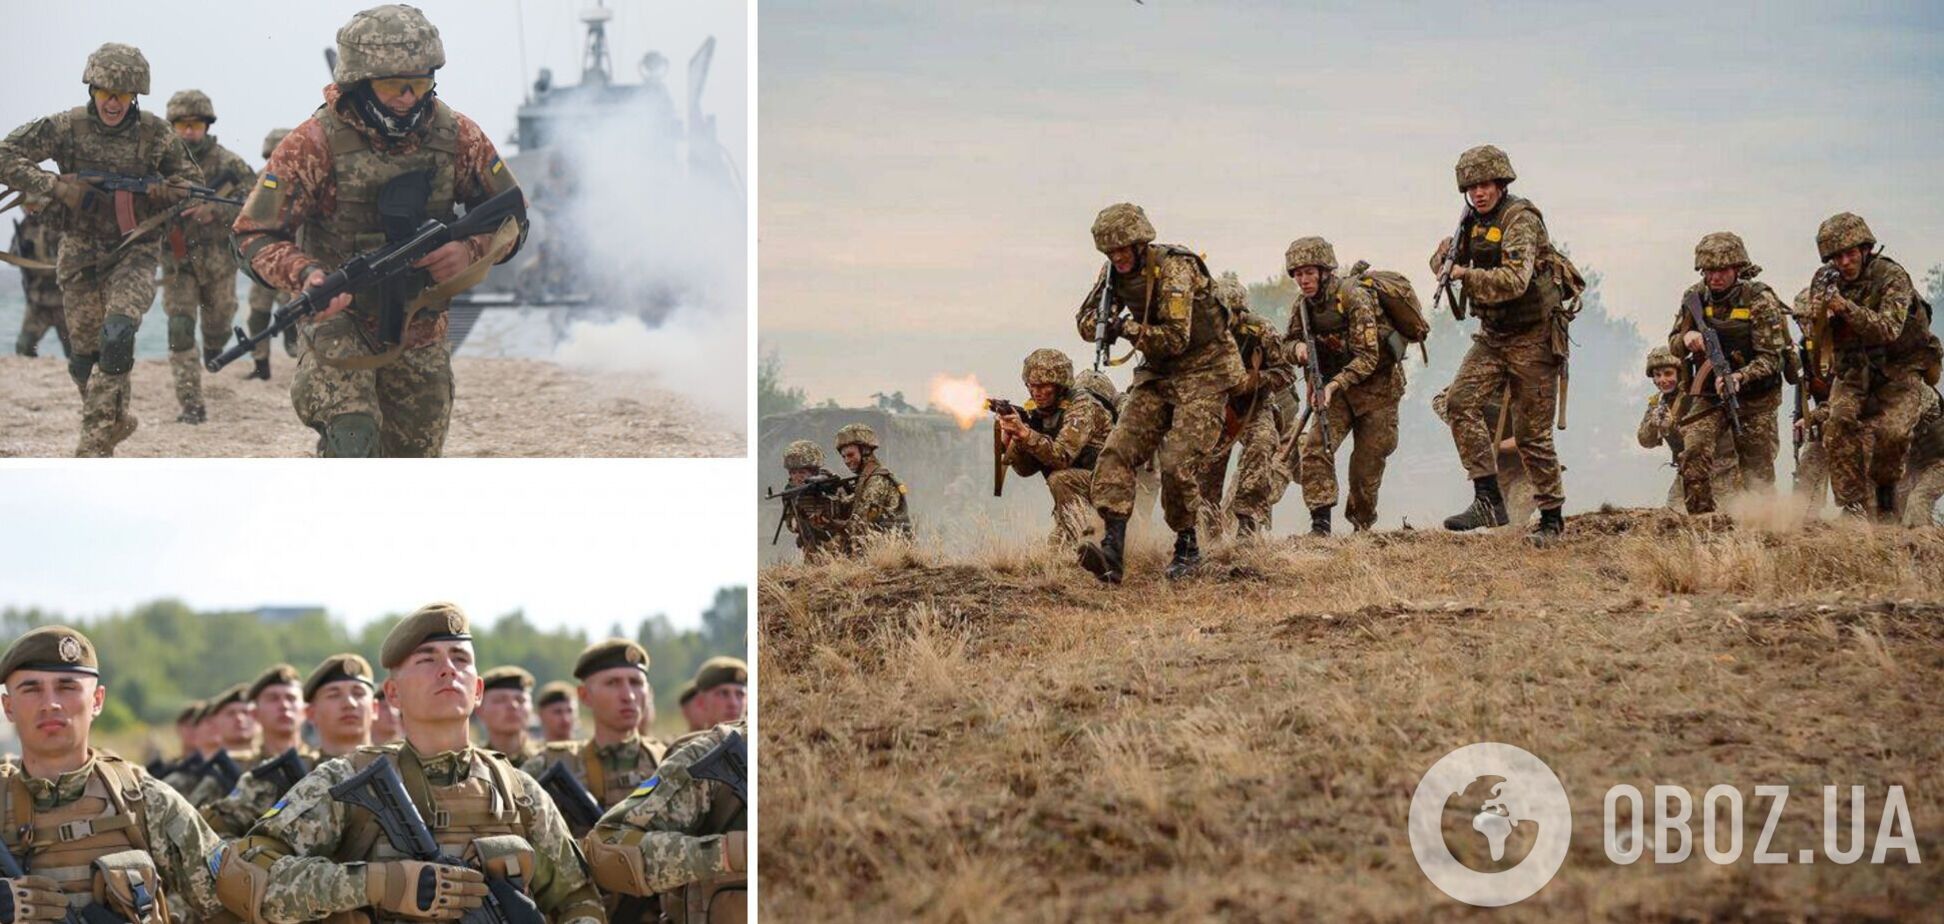 'Несут на себе основное бремя войны': в Украине отмечают День пехоты